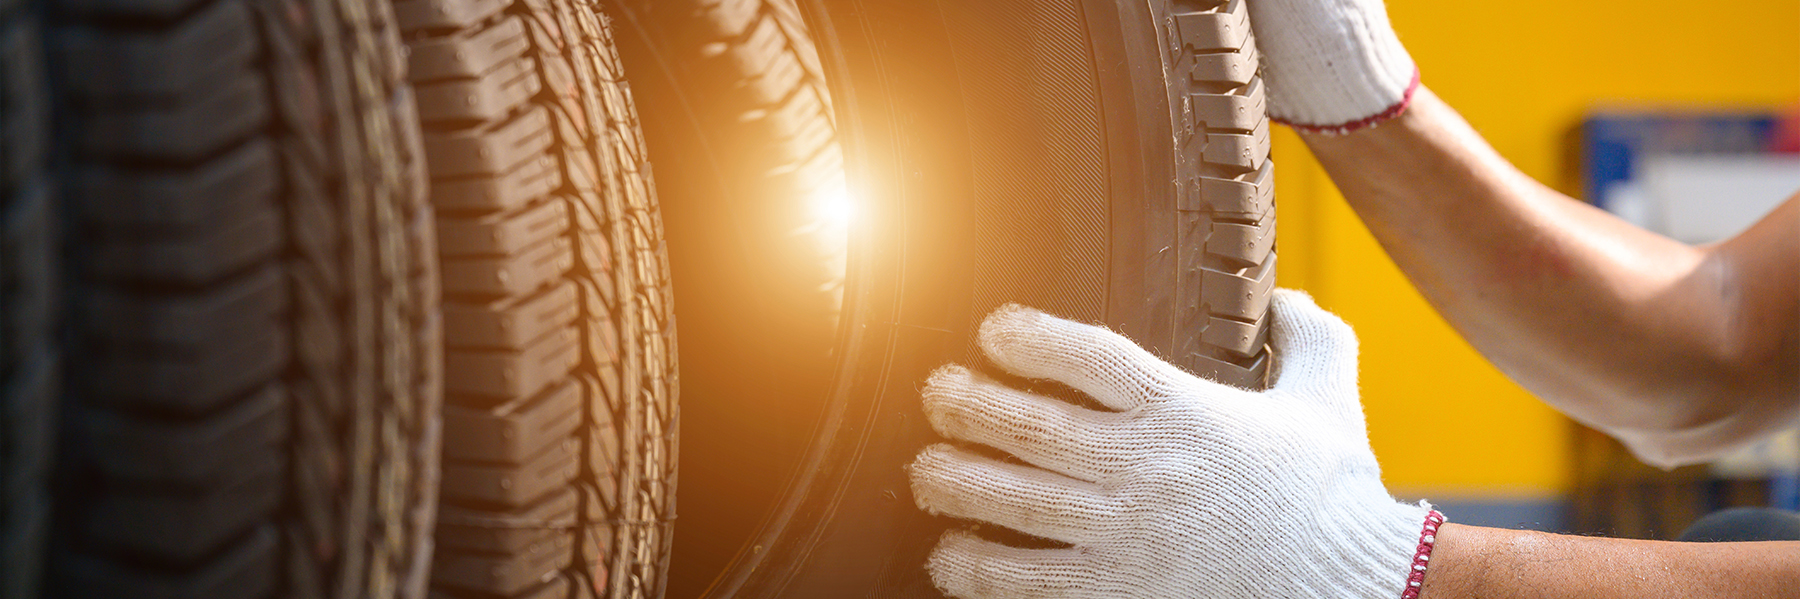 Reifenmonteur prüft den Zustand der neuen Reifen auf Lager, damit sie in einem Servicecenter oder einer Autowerkstatt ausgetauscht werden können